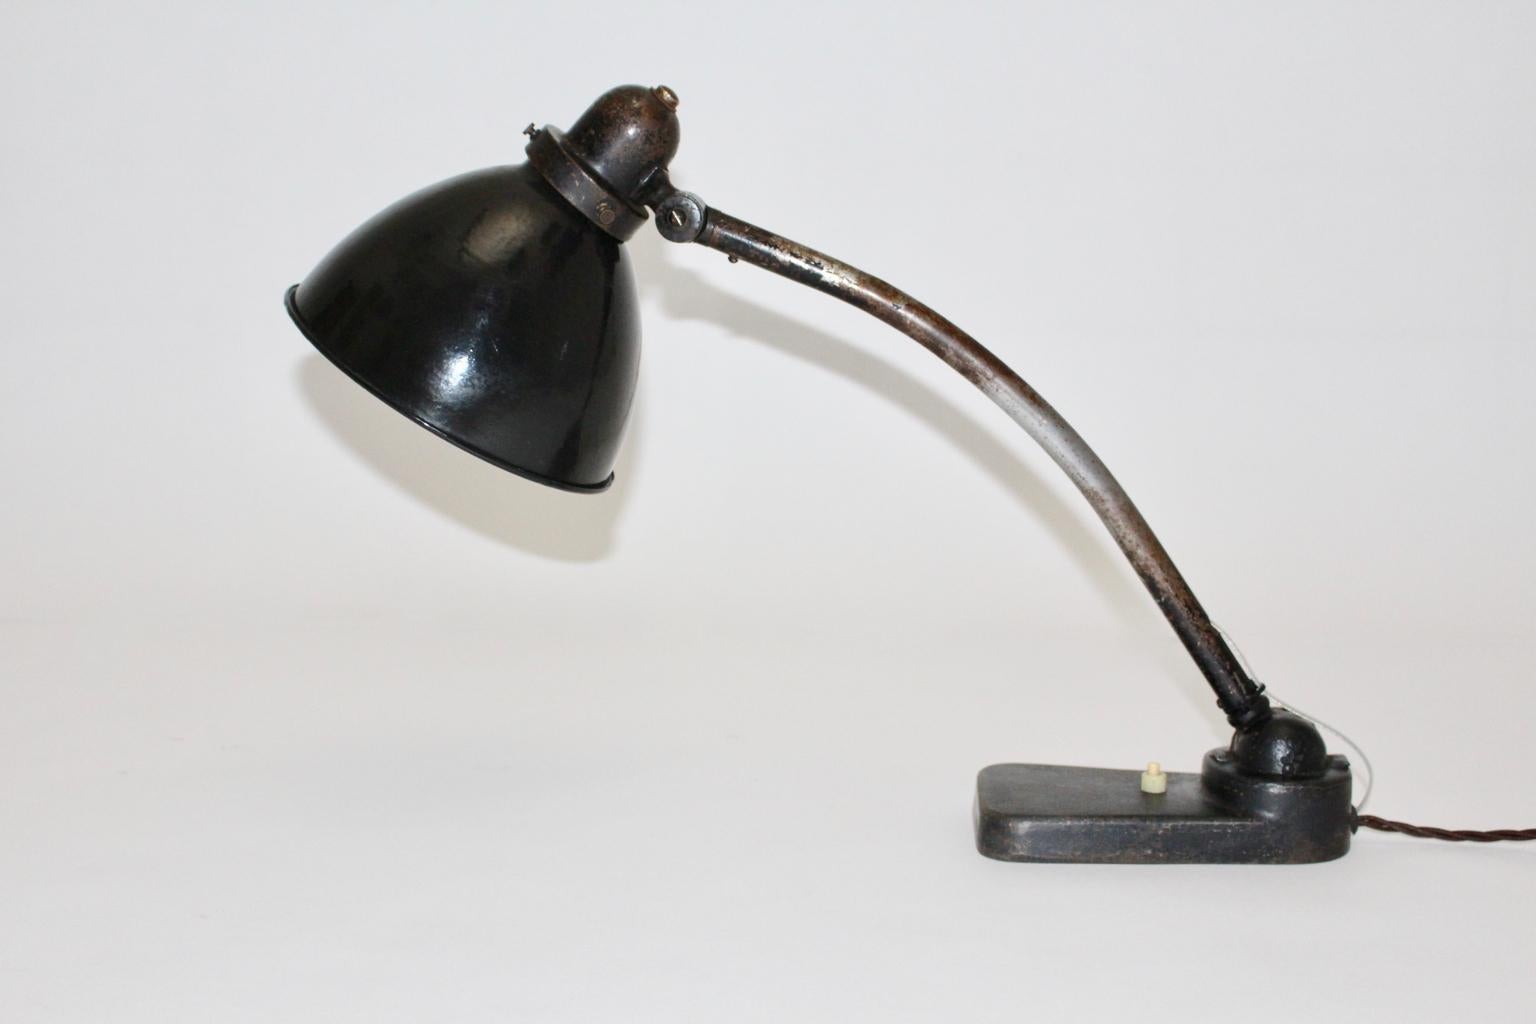 Bauhaus-Tischlampe oder Architektenlampe aus dem Deutschland der 1930er Jahre.
Eine schöne Tischlampe aus schwarz lackiertem Metall, die einen verstellbaren Schirm von oben nach unten zeigt.
Während der Schirm innen weiß und schwarz emailliert ist,